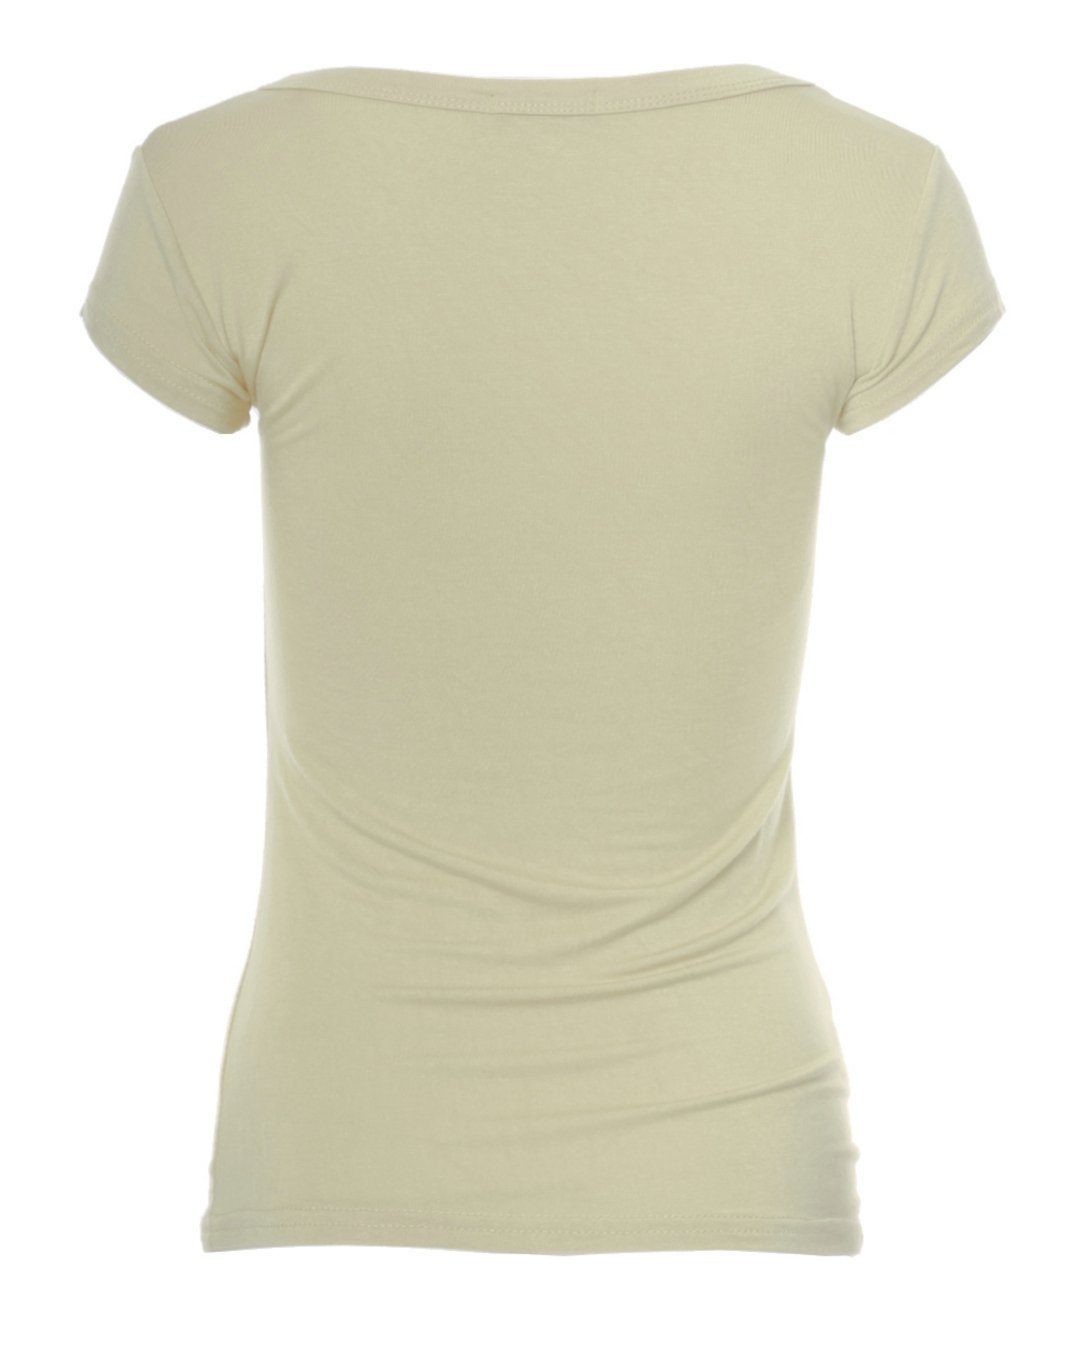 T-Shirt Skinny Basic 1001 Muse sand T-Shirt Kurzarm Fit